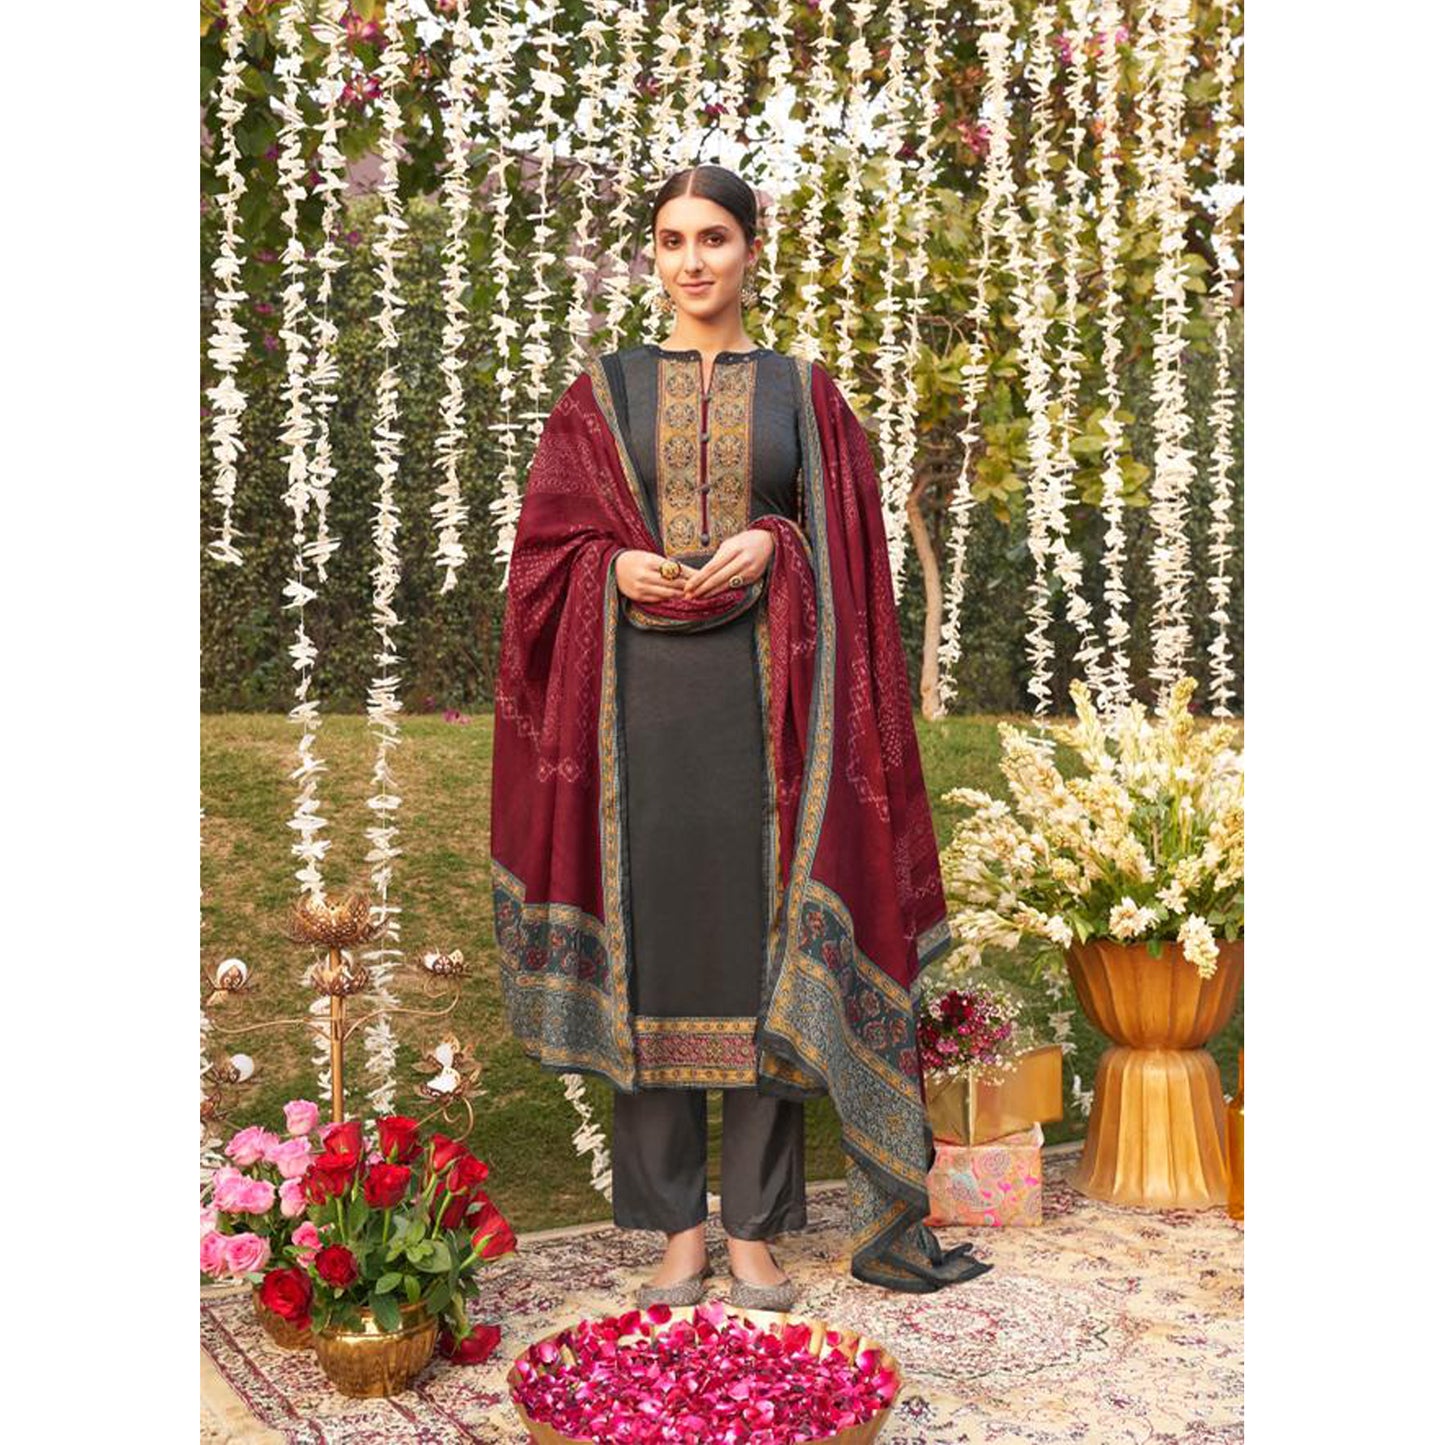 Rajasthani Jaipuri Royal Wedding Style Salwar Kameez with Bandhani Dupatta Suits